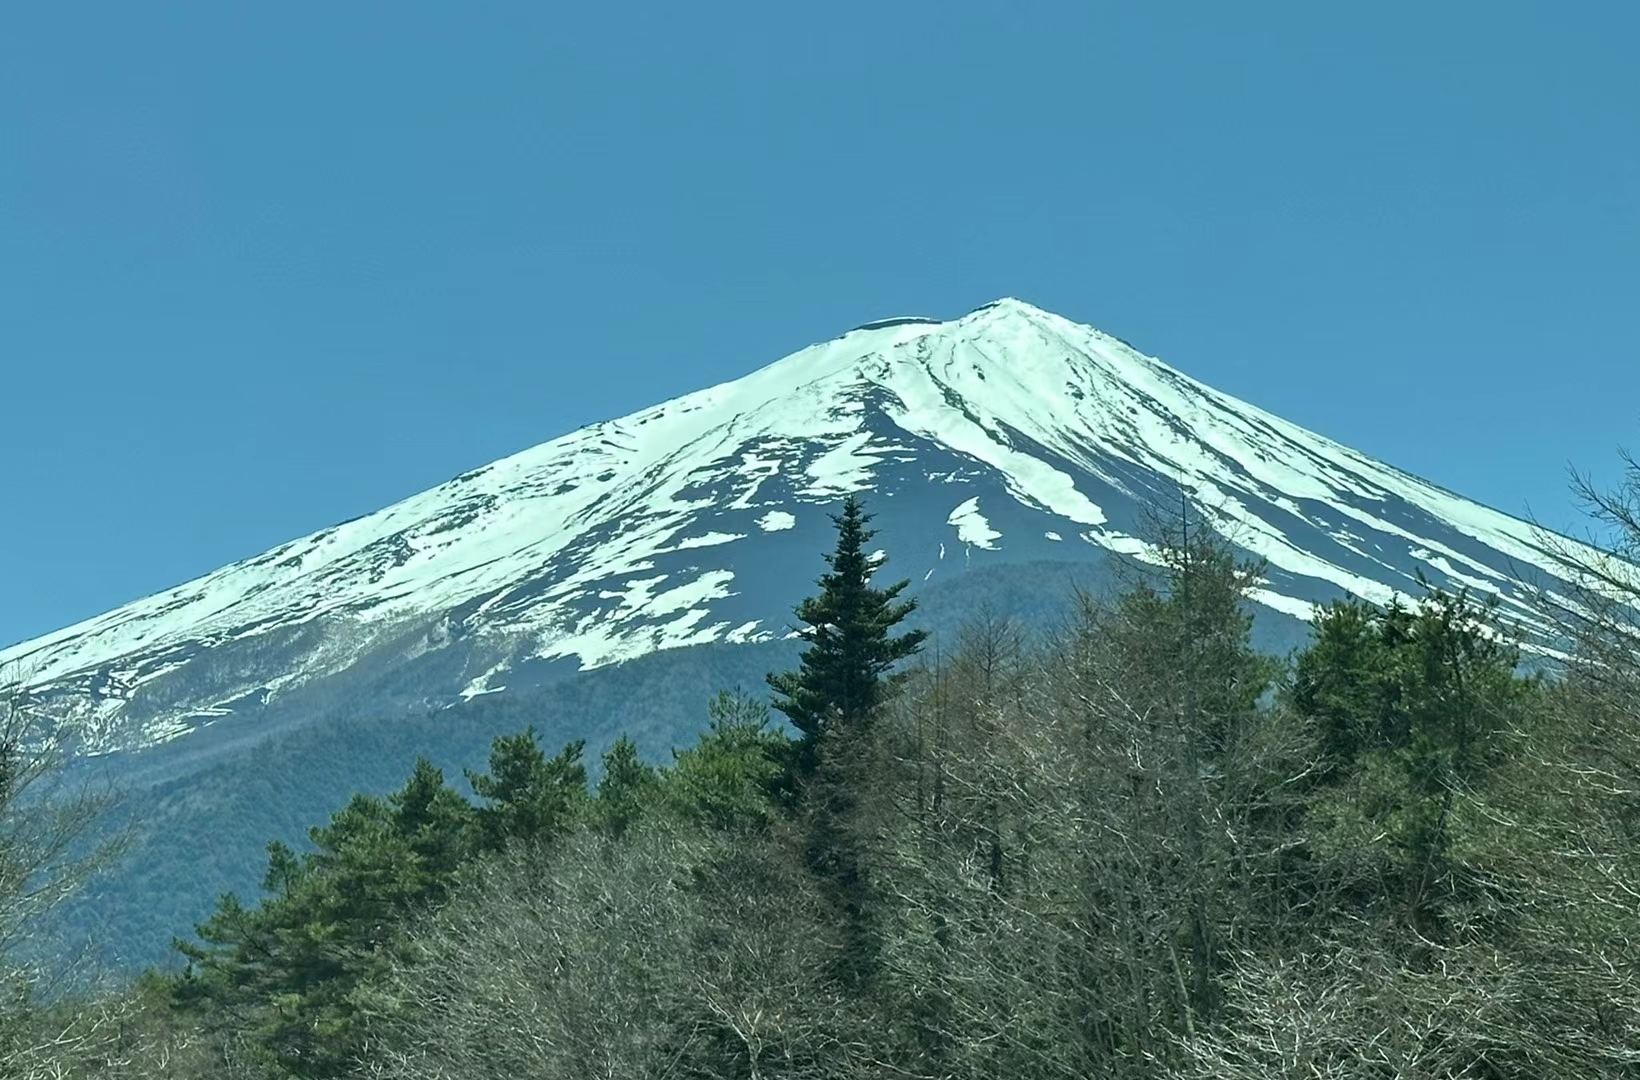 以前是陈奕迅歌中的富士山下，现在近在咫尺